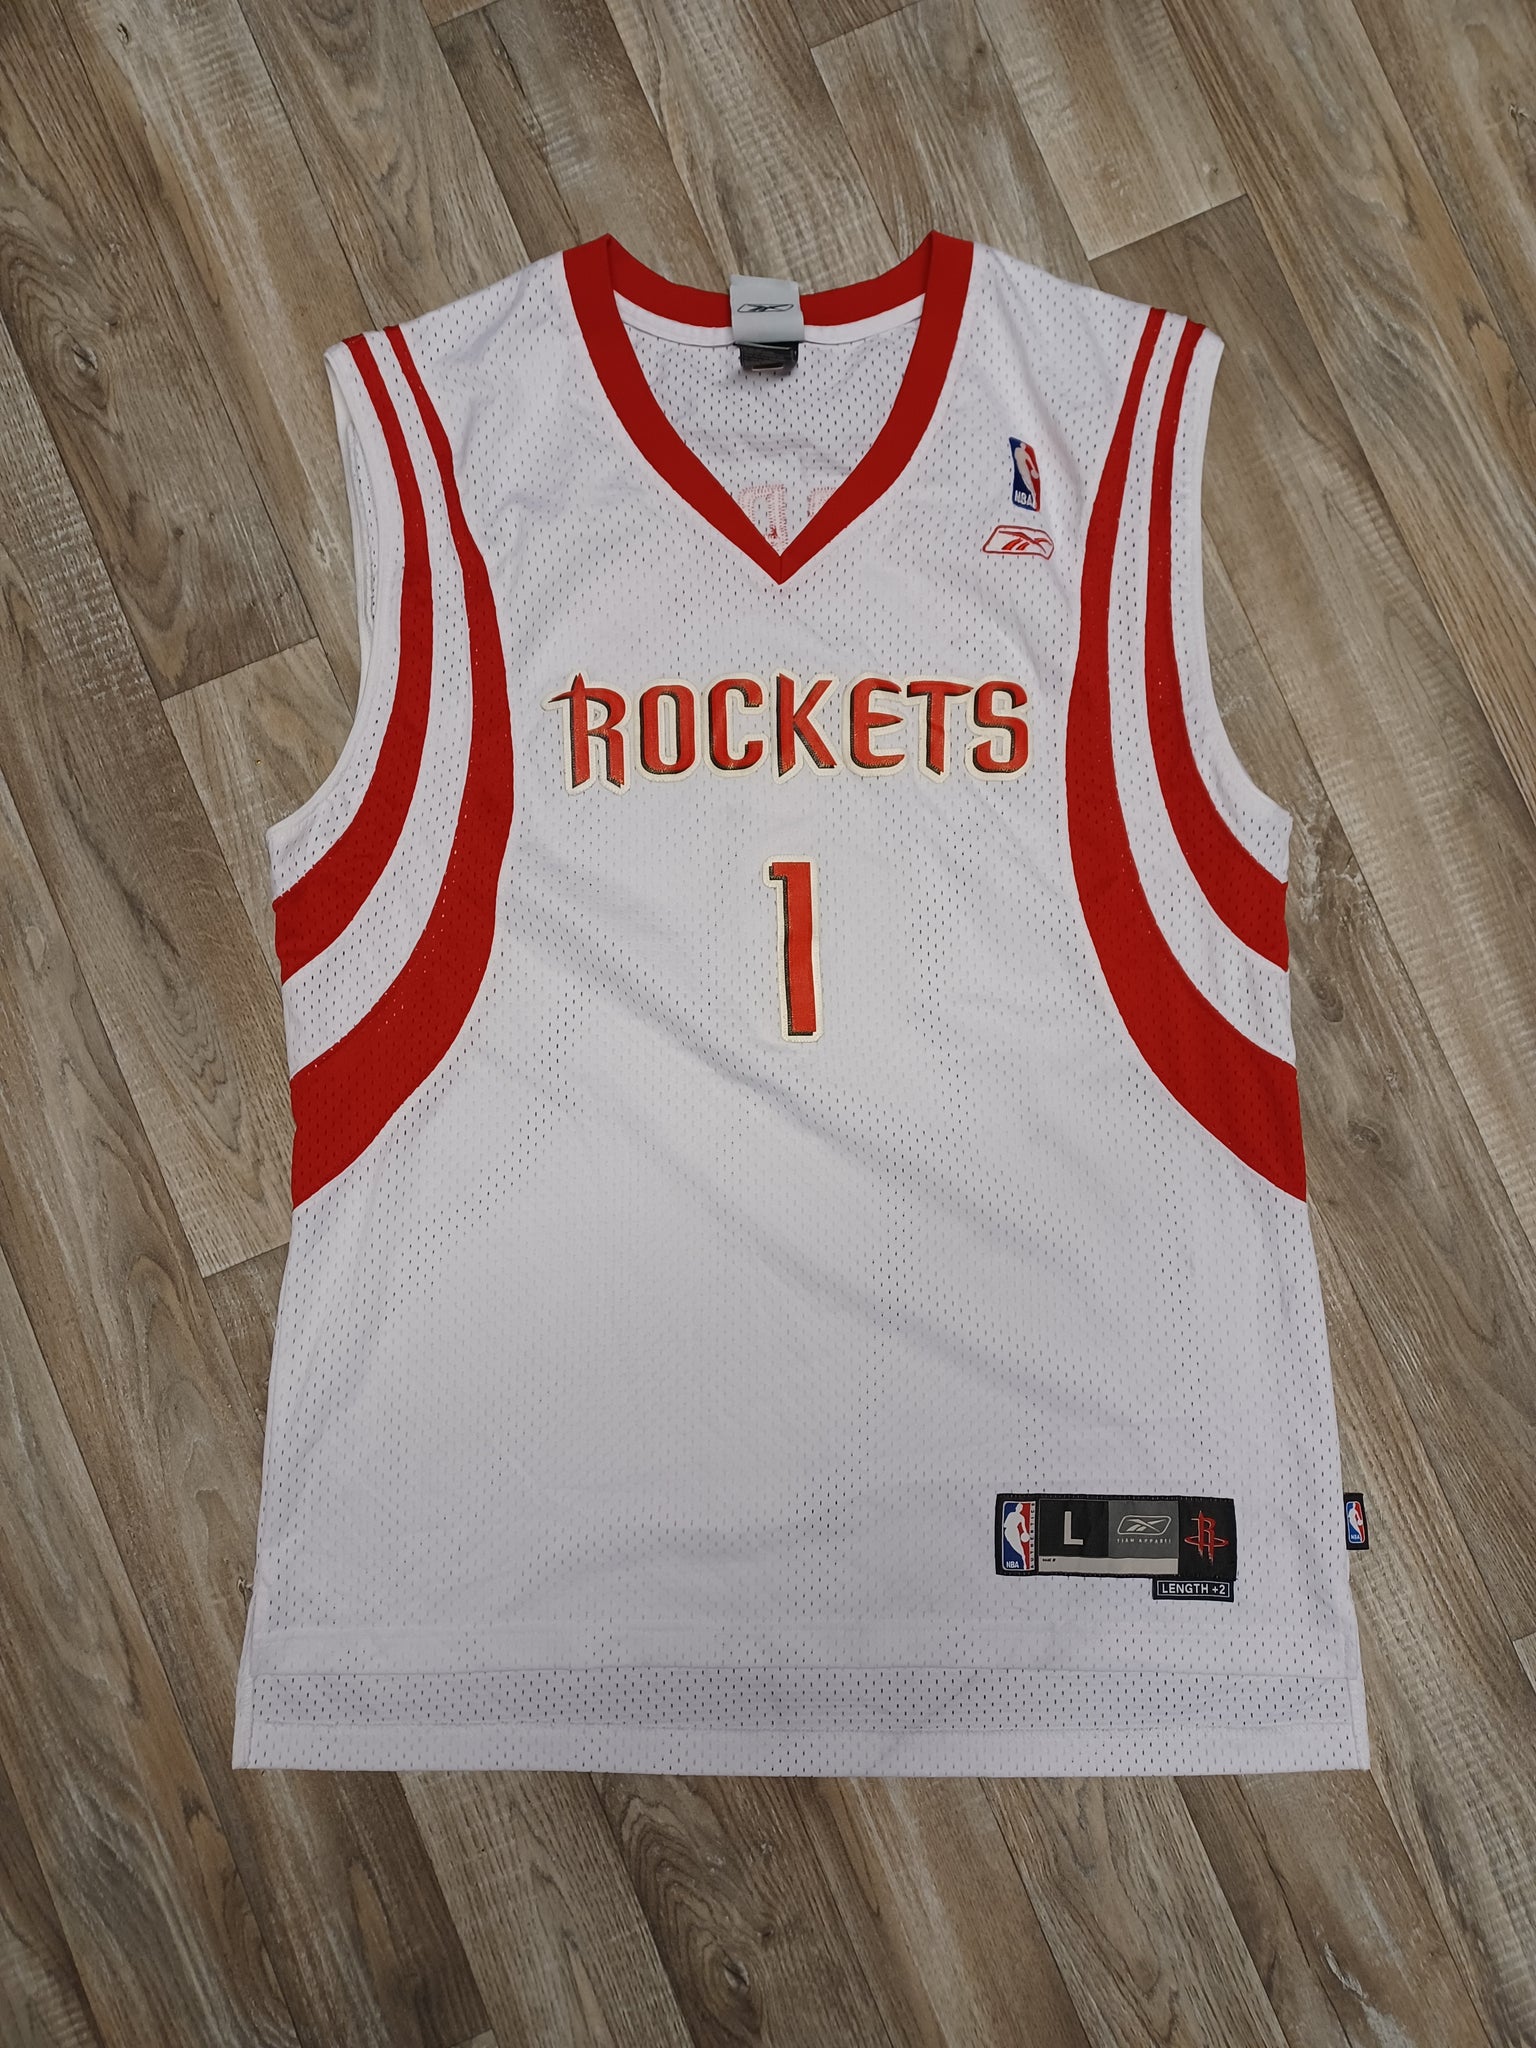 rockets jersey 1